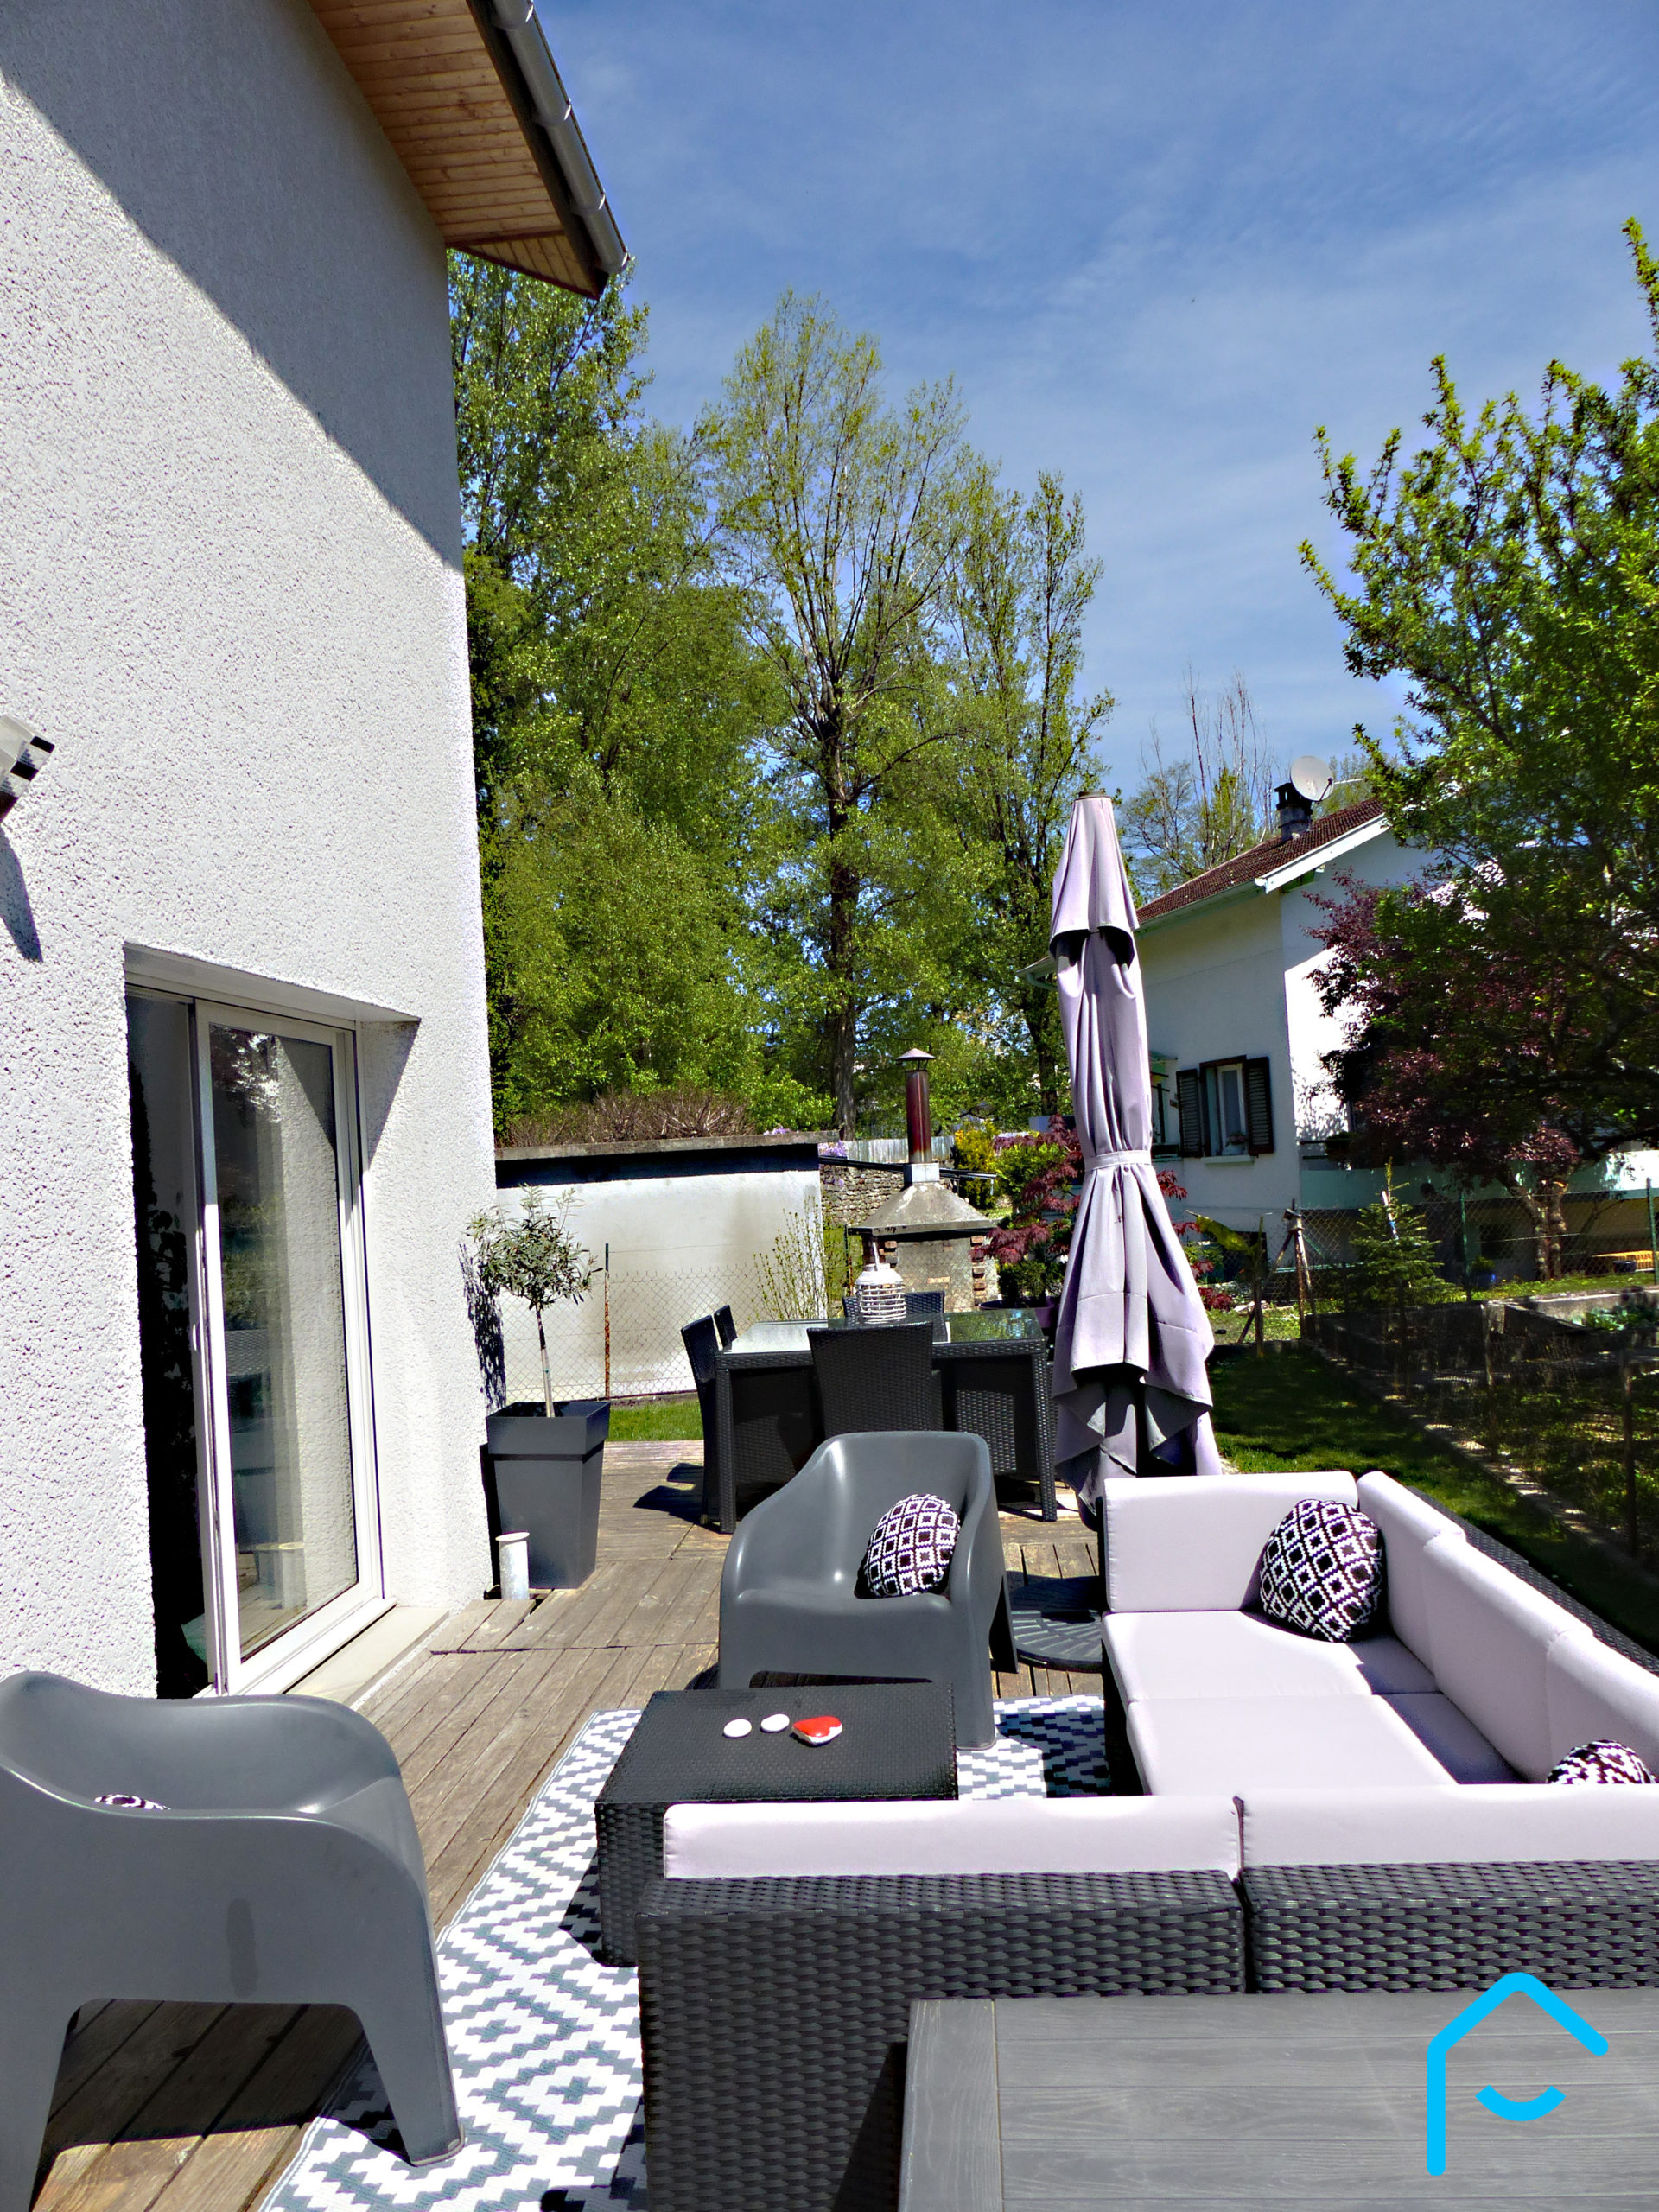 Vente maison récente Aix Les Bains Savoie 100 m² luminosité terrain maison familliale 3 chambres cuisine jardin 1